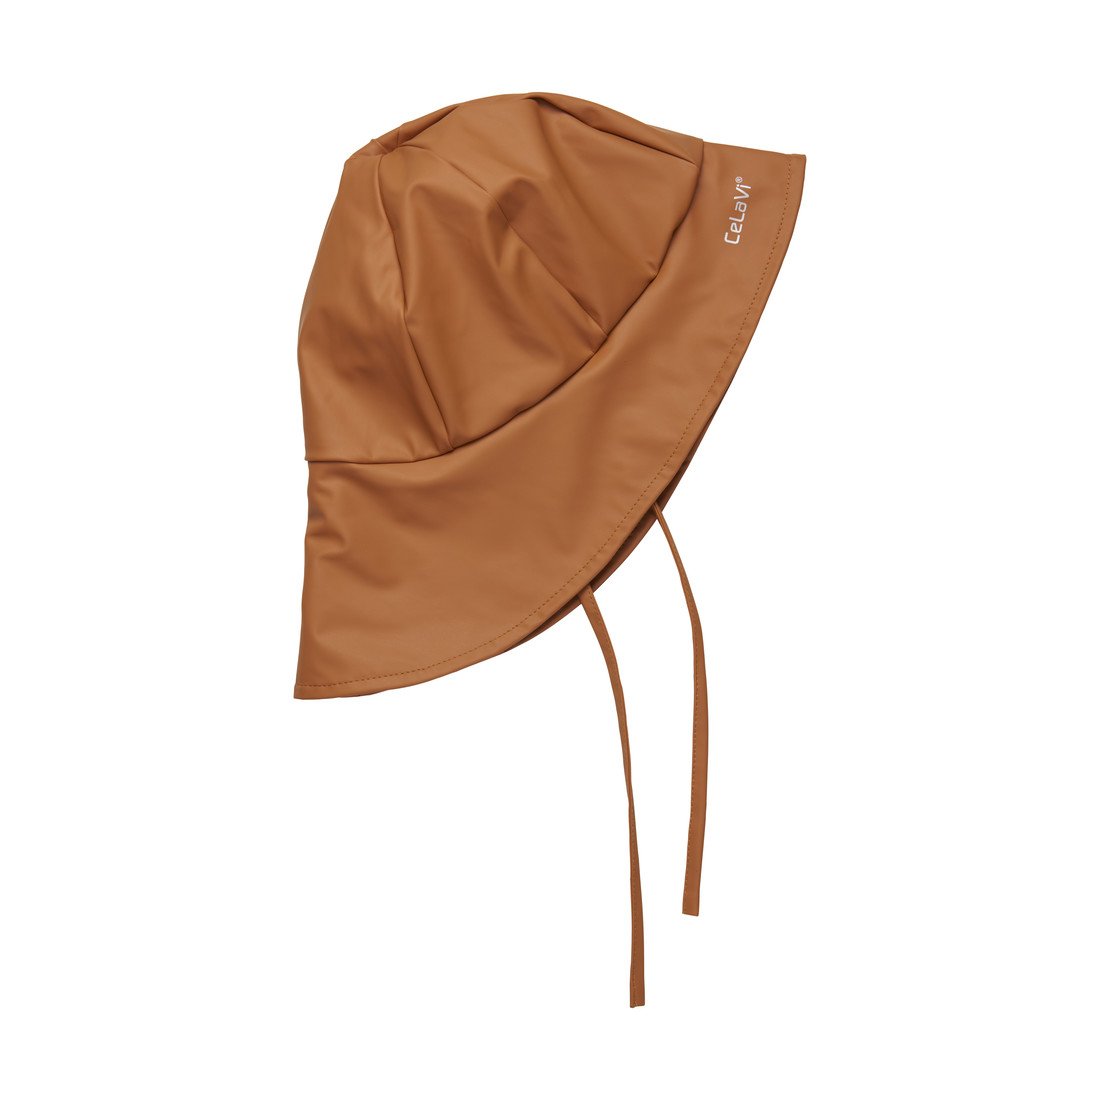 CeLaVi dětský klobouk do deště s fleece podšívkou 310309 - 4711 Velikost: 80